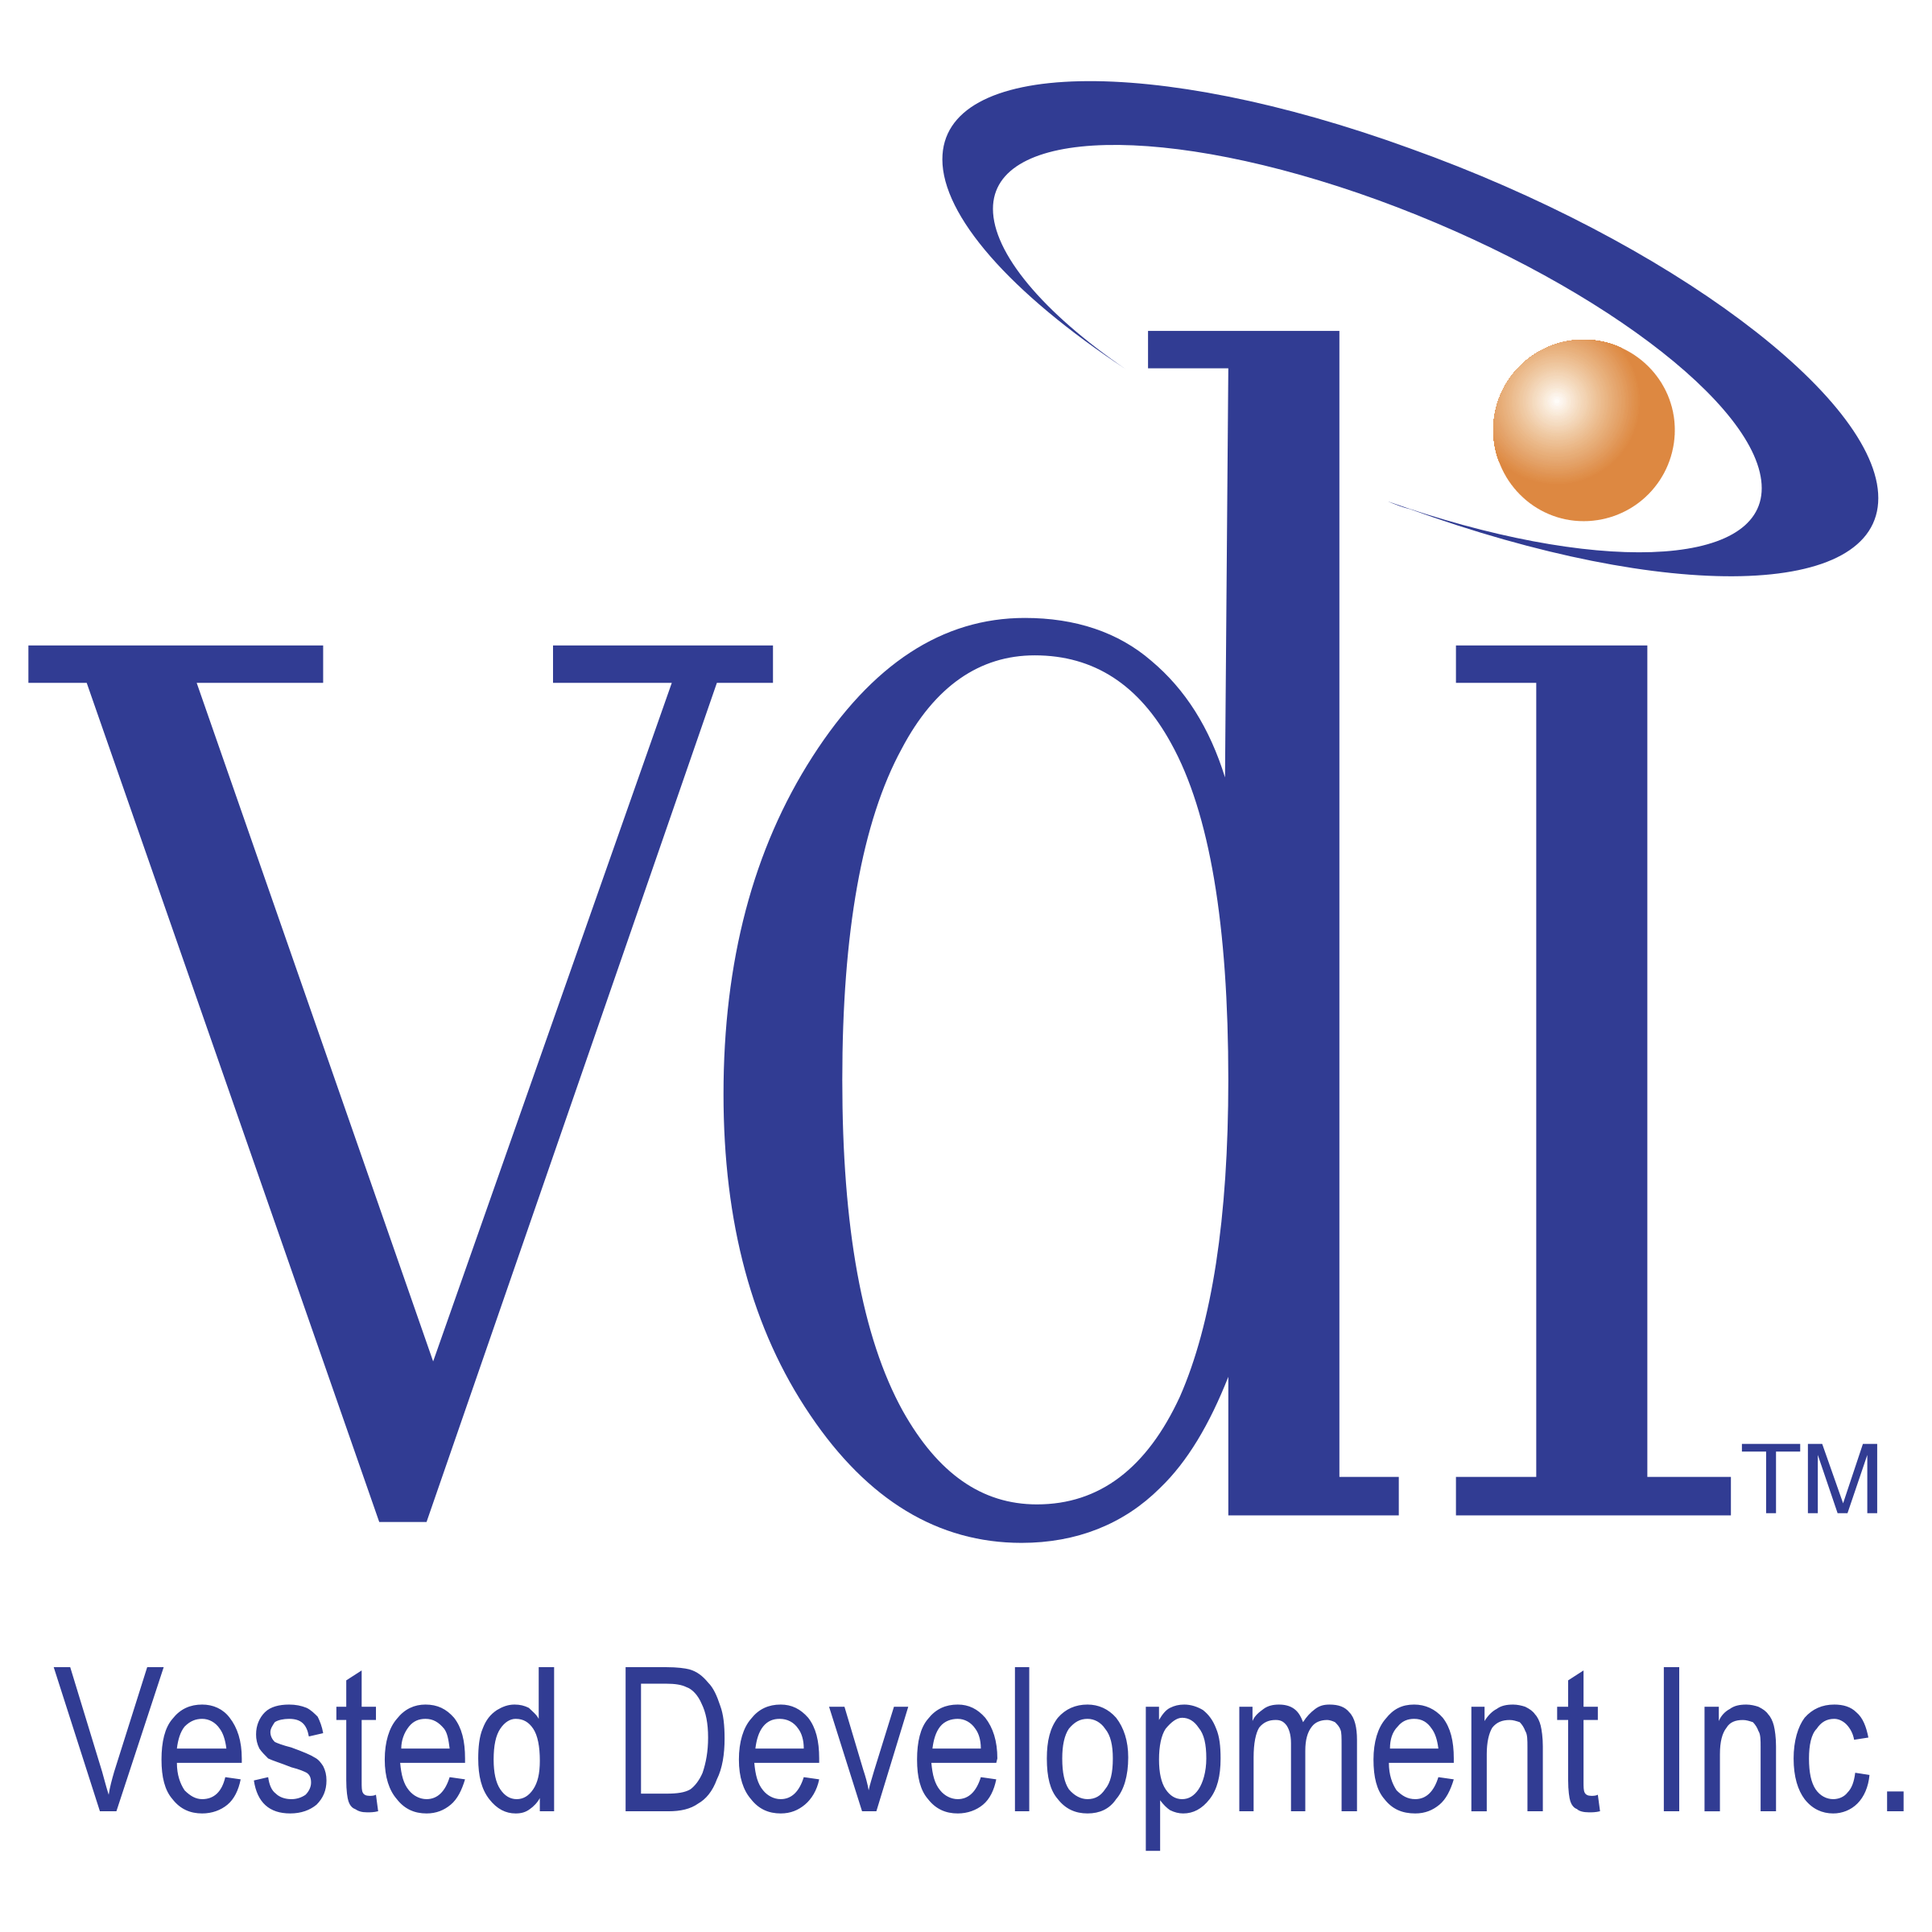 VDI Logo - VDI Logo PNG Transparent & SVG Vector